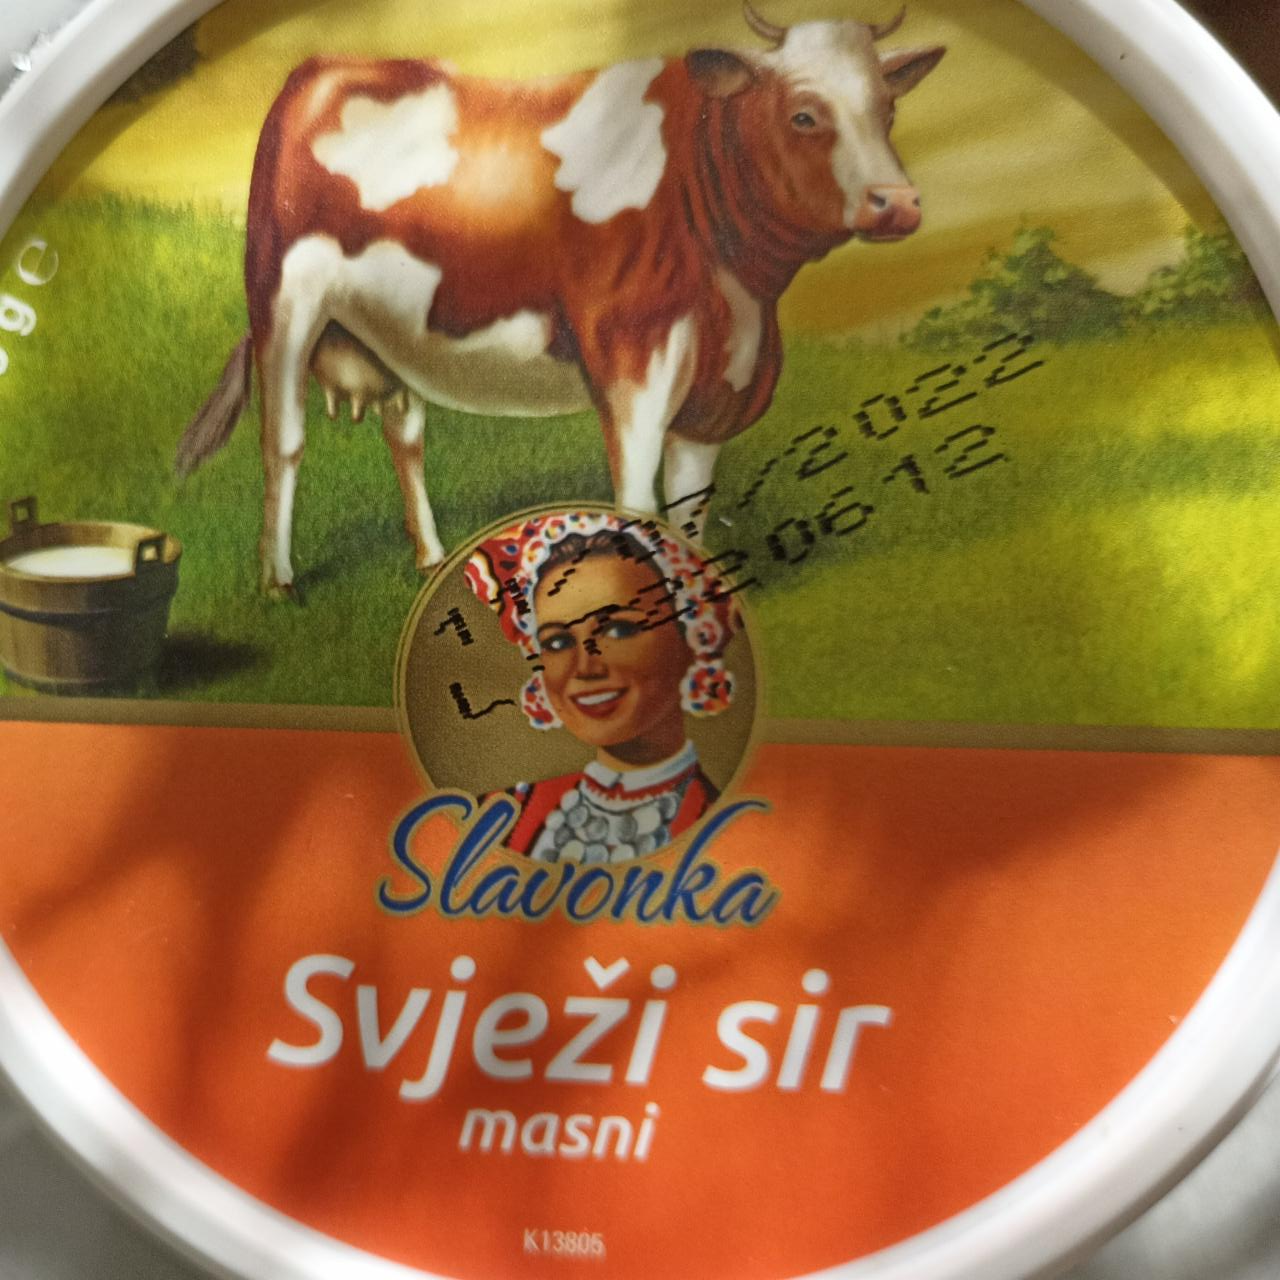 Fotografie - Svježi sir masni Slavonka